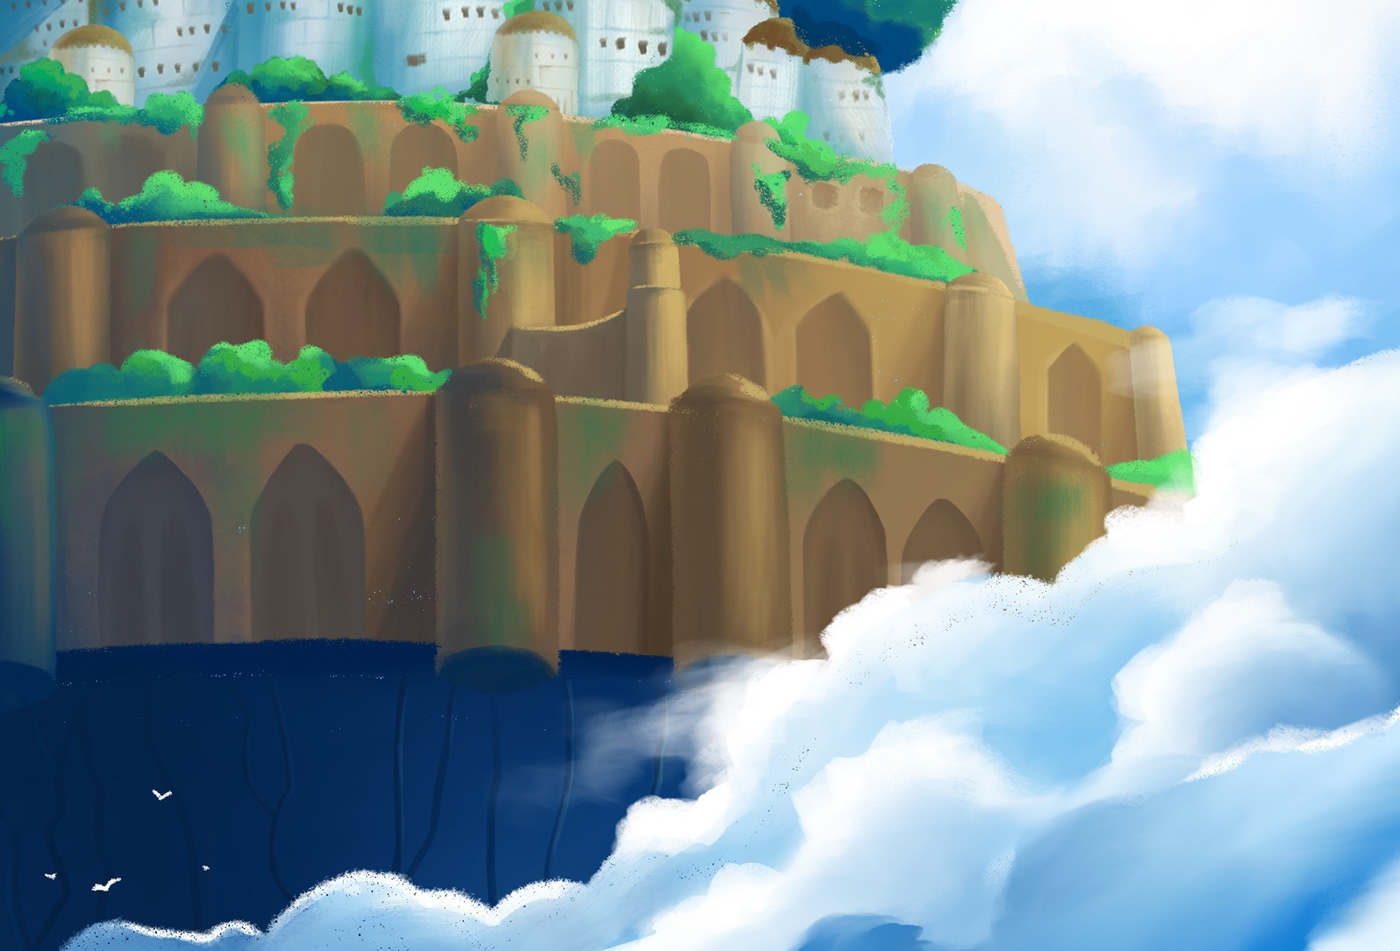 Ghibli Digital Art  art castle in the sky ghibliartwork